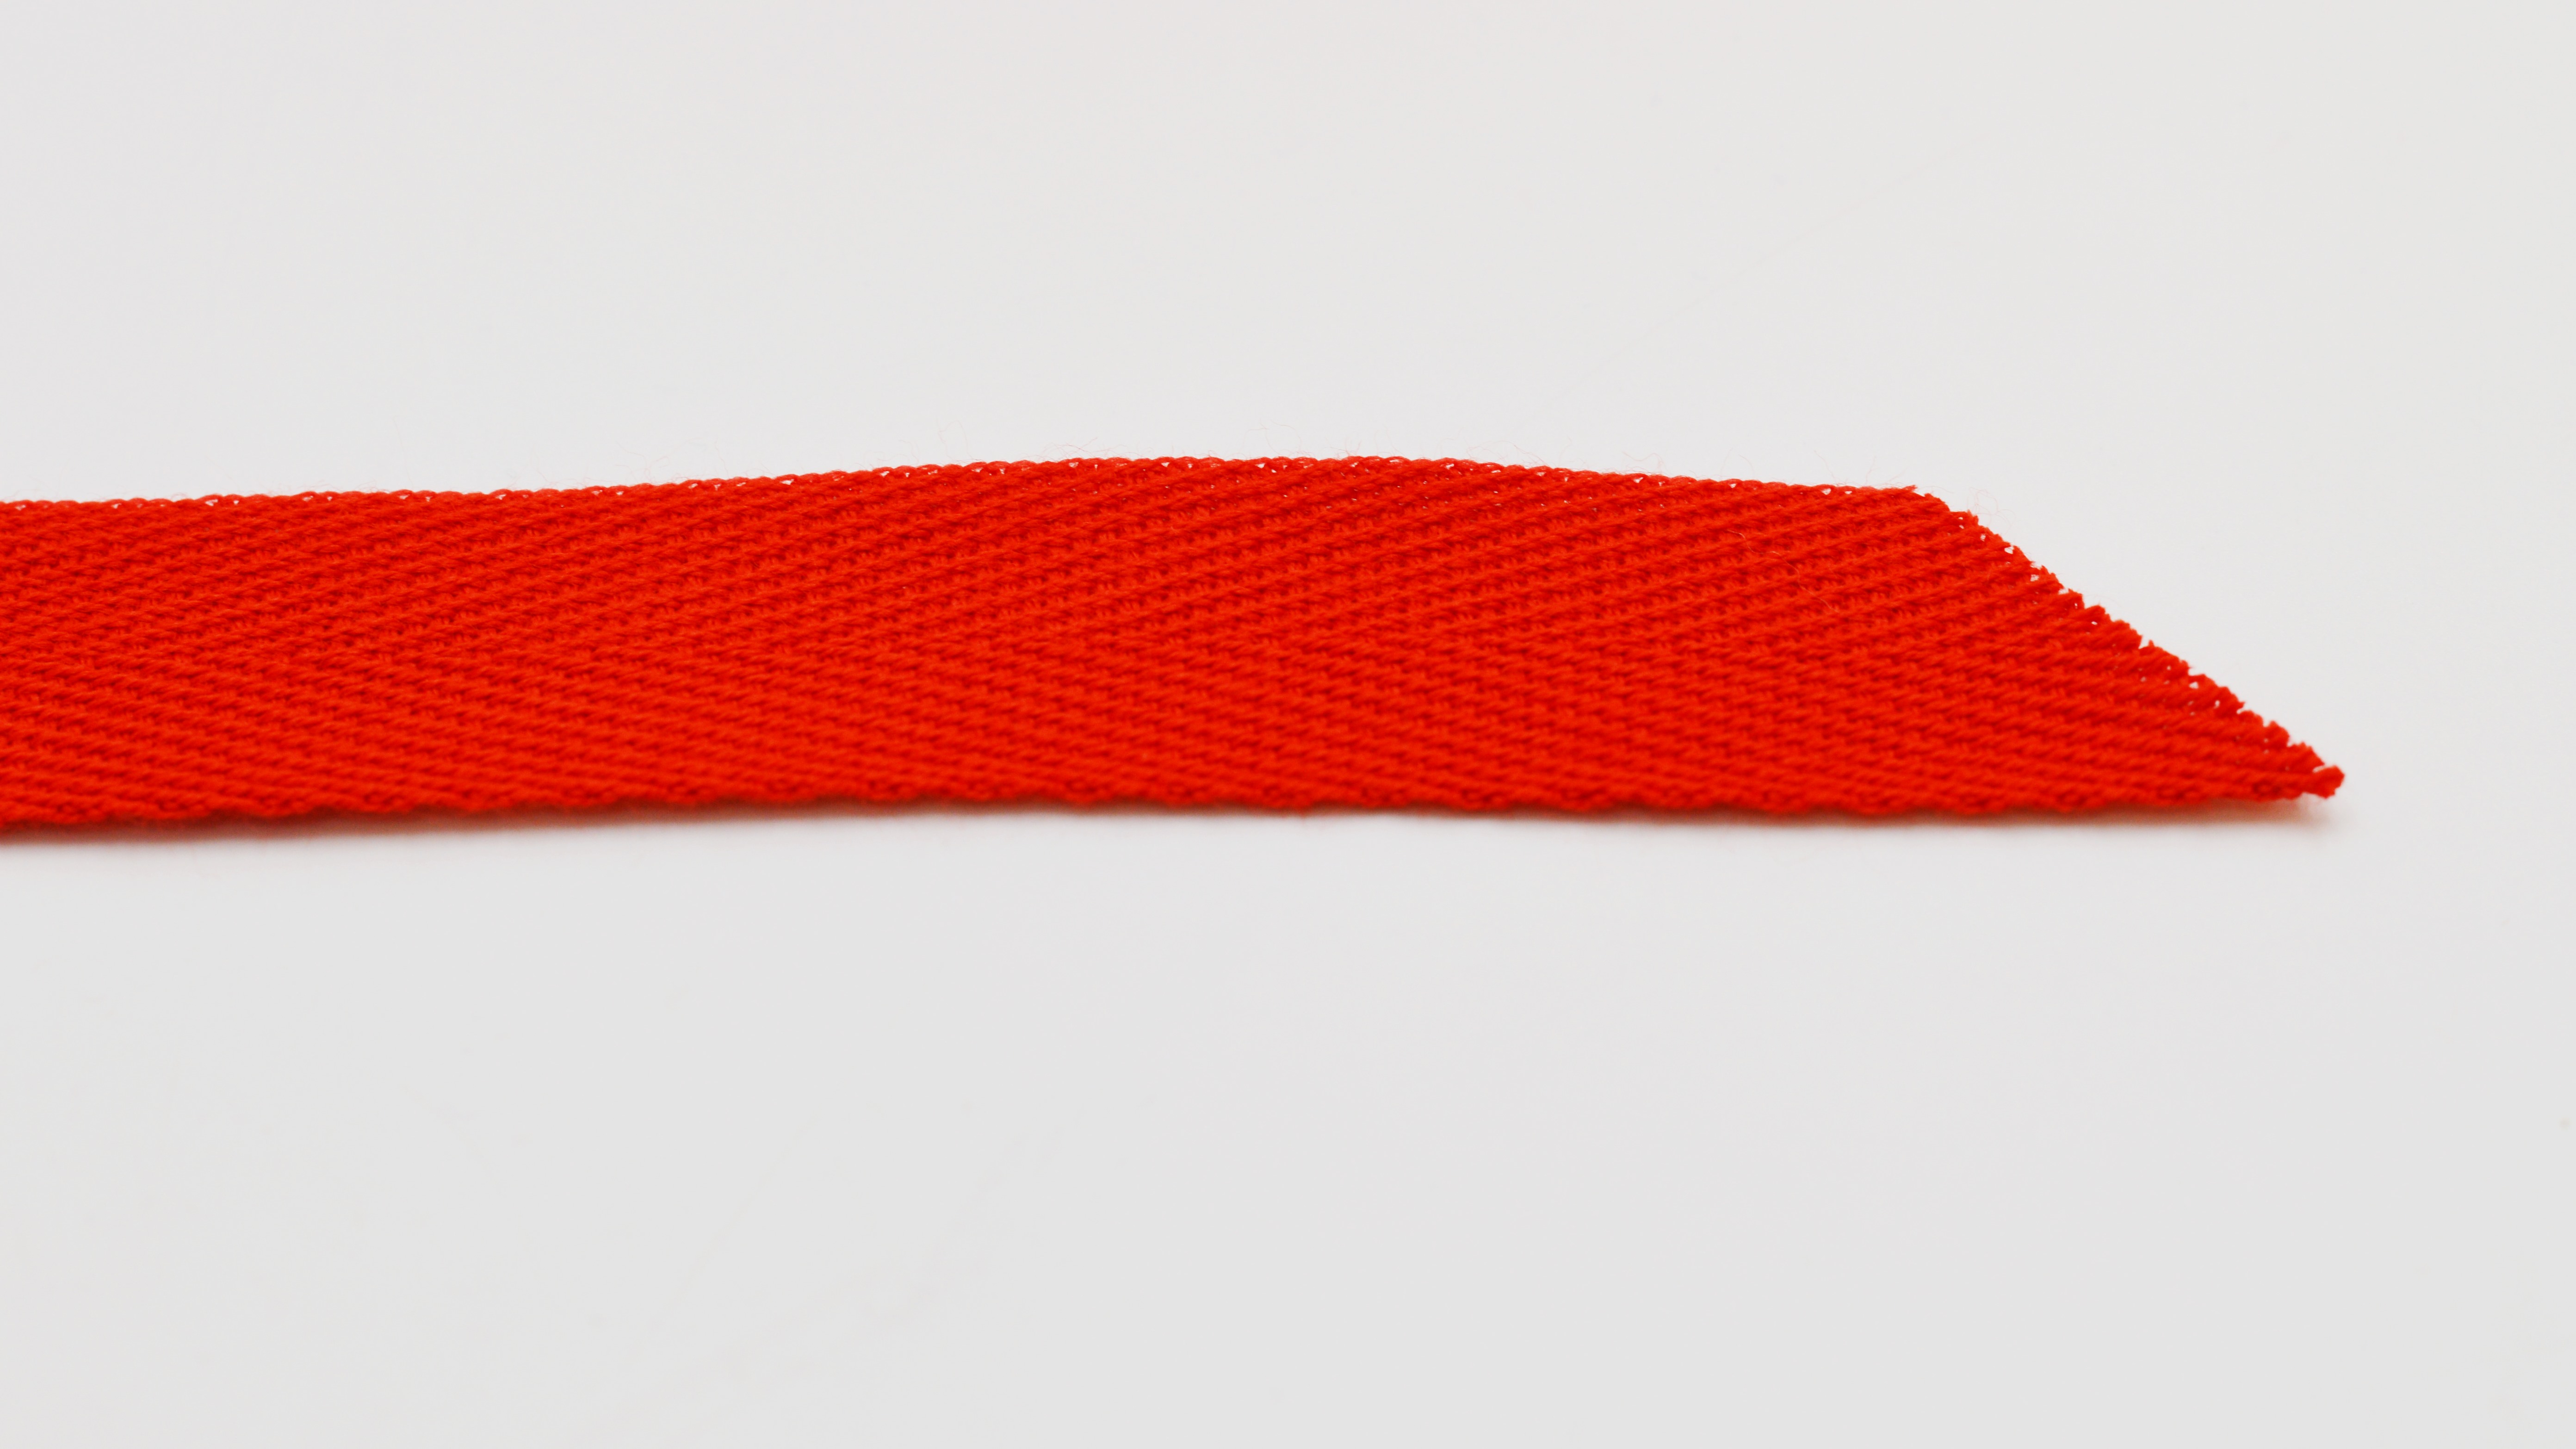 Einfassband für Persenninge Cabrio Dächer Farbe Rot 